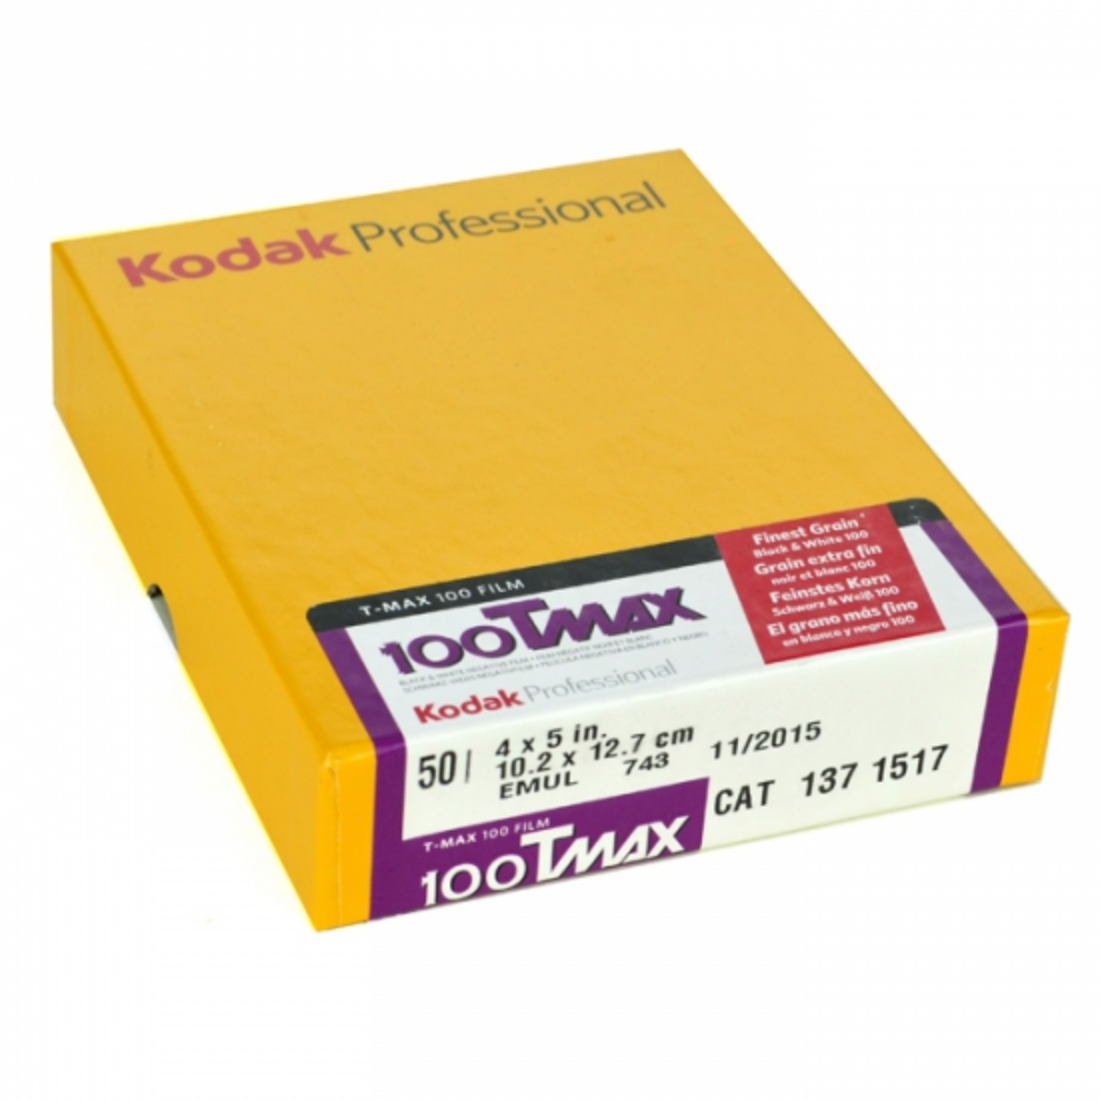 Kodak TMAX 100 4x5 50 B&W Film